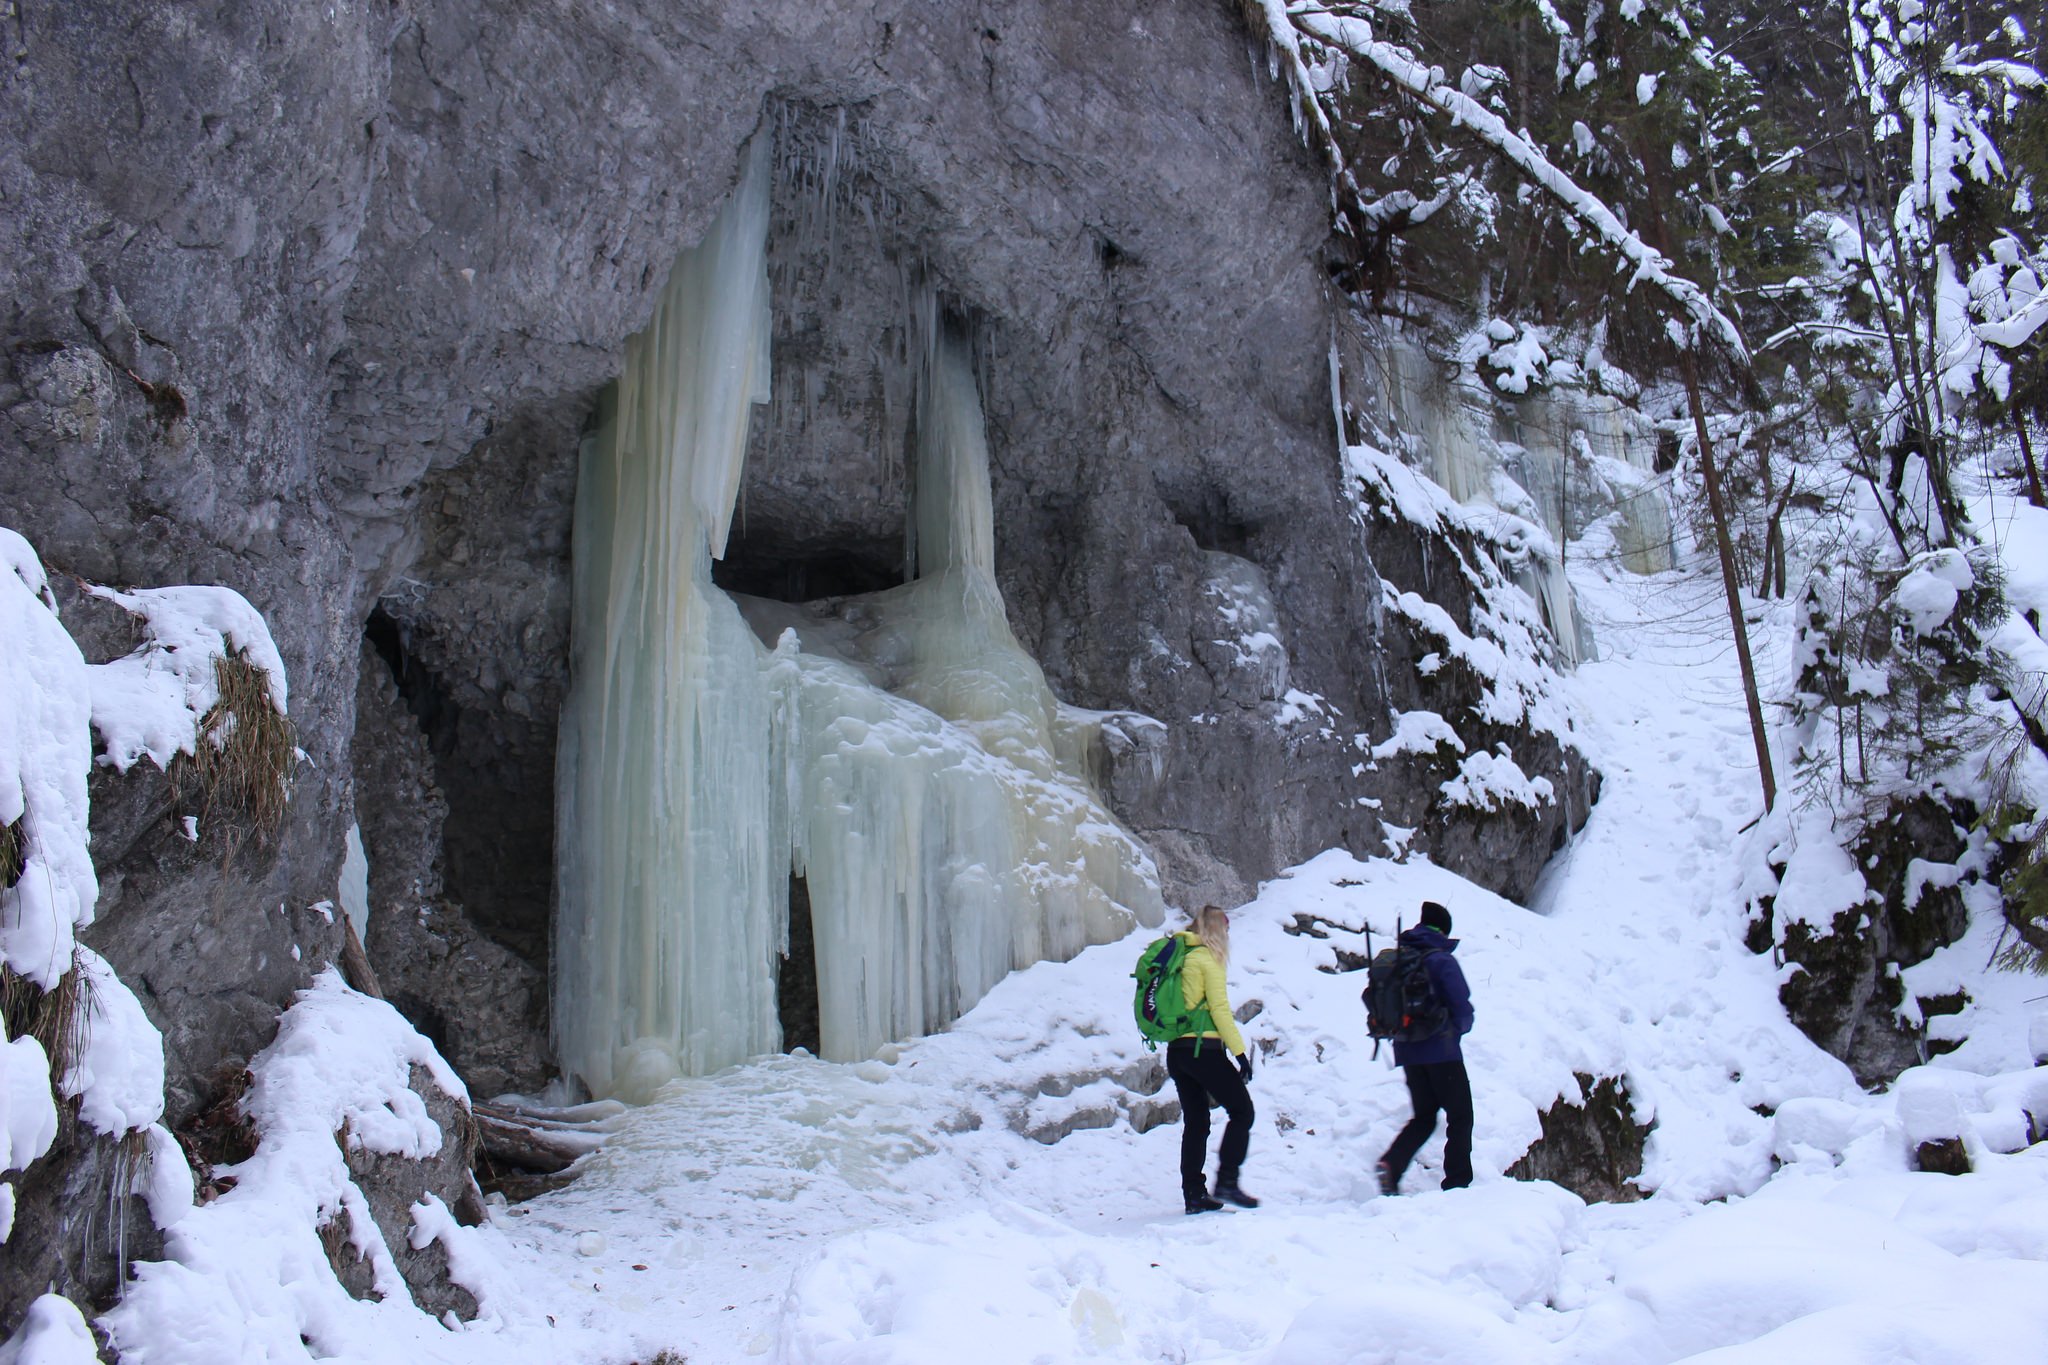 Suchá Belá gorge, winter hiking trip, Košice region, Slovakia – 20